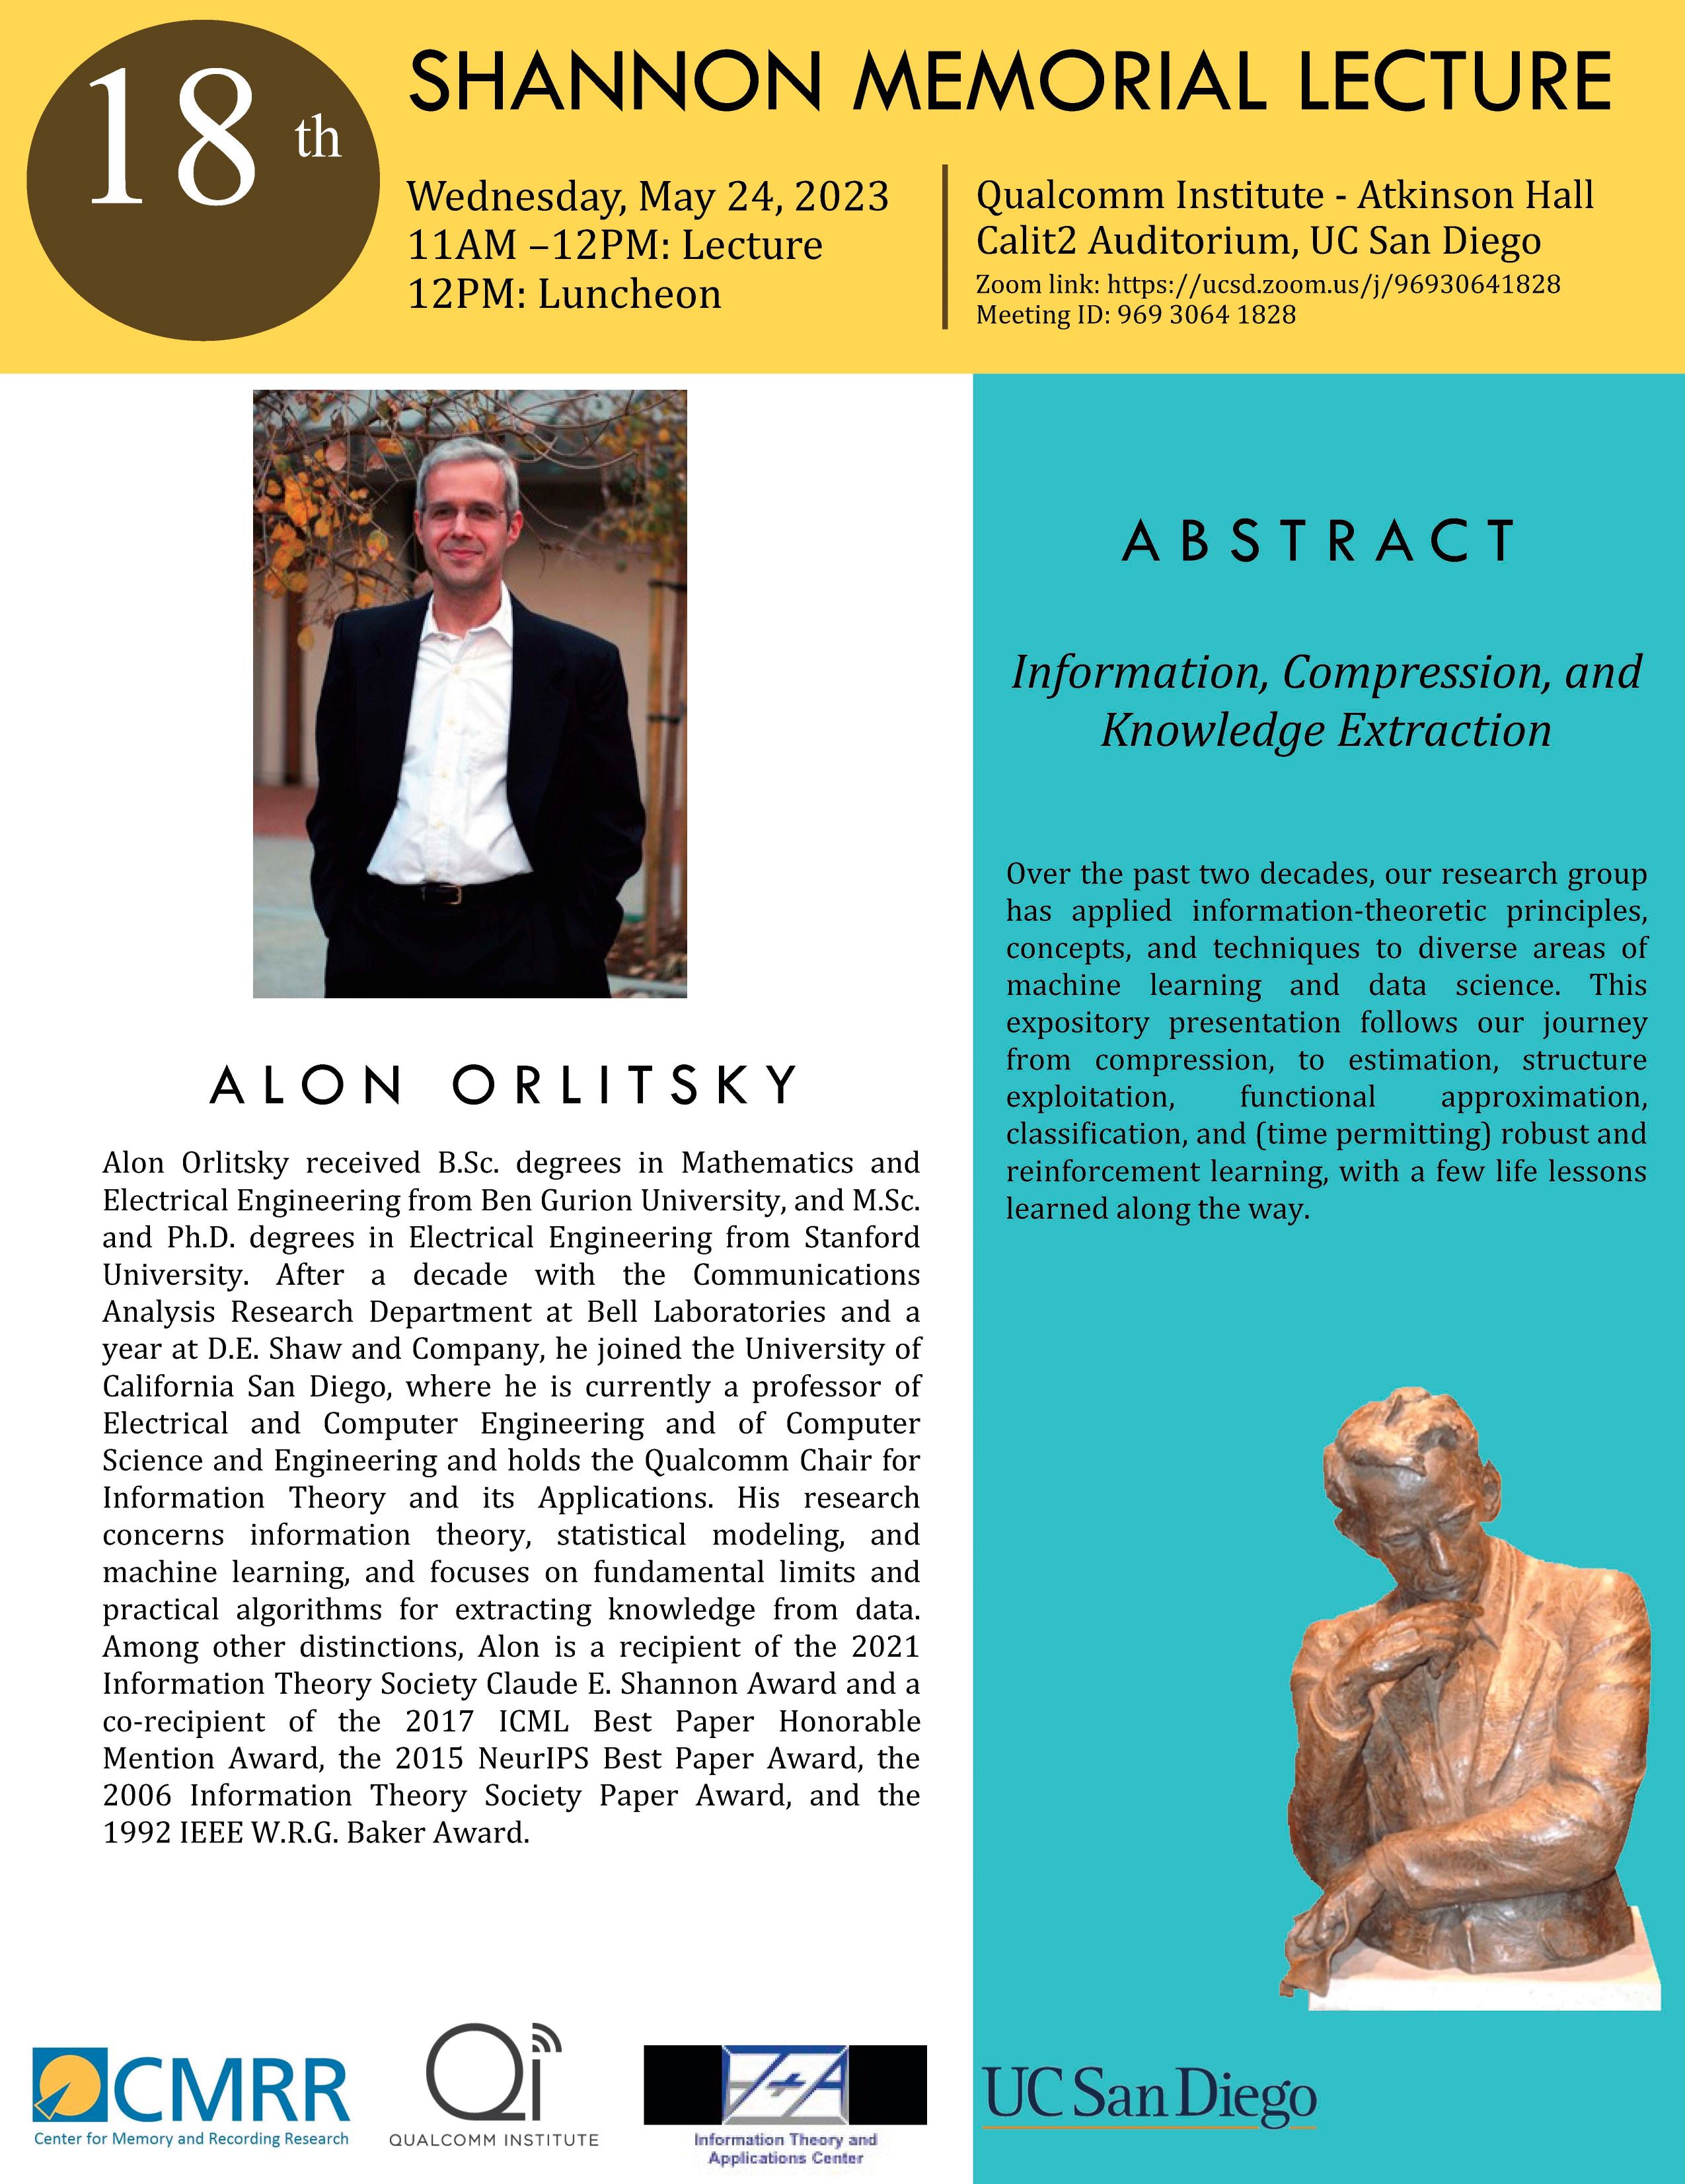 18th Annual Shannon Memorial Lecture @ UCSD - Prof. Alon Orlitsky